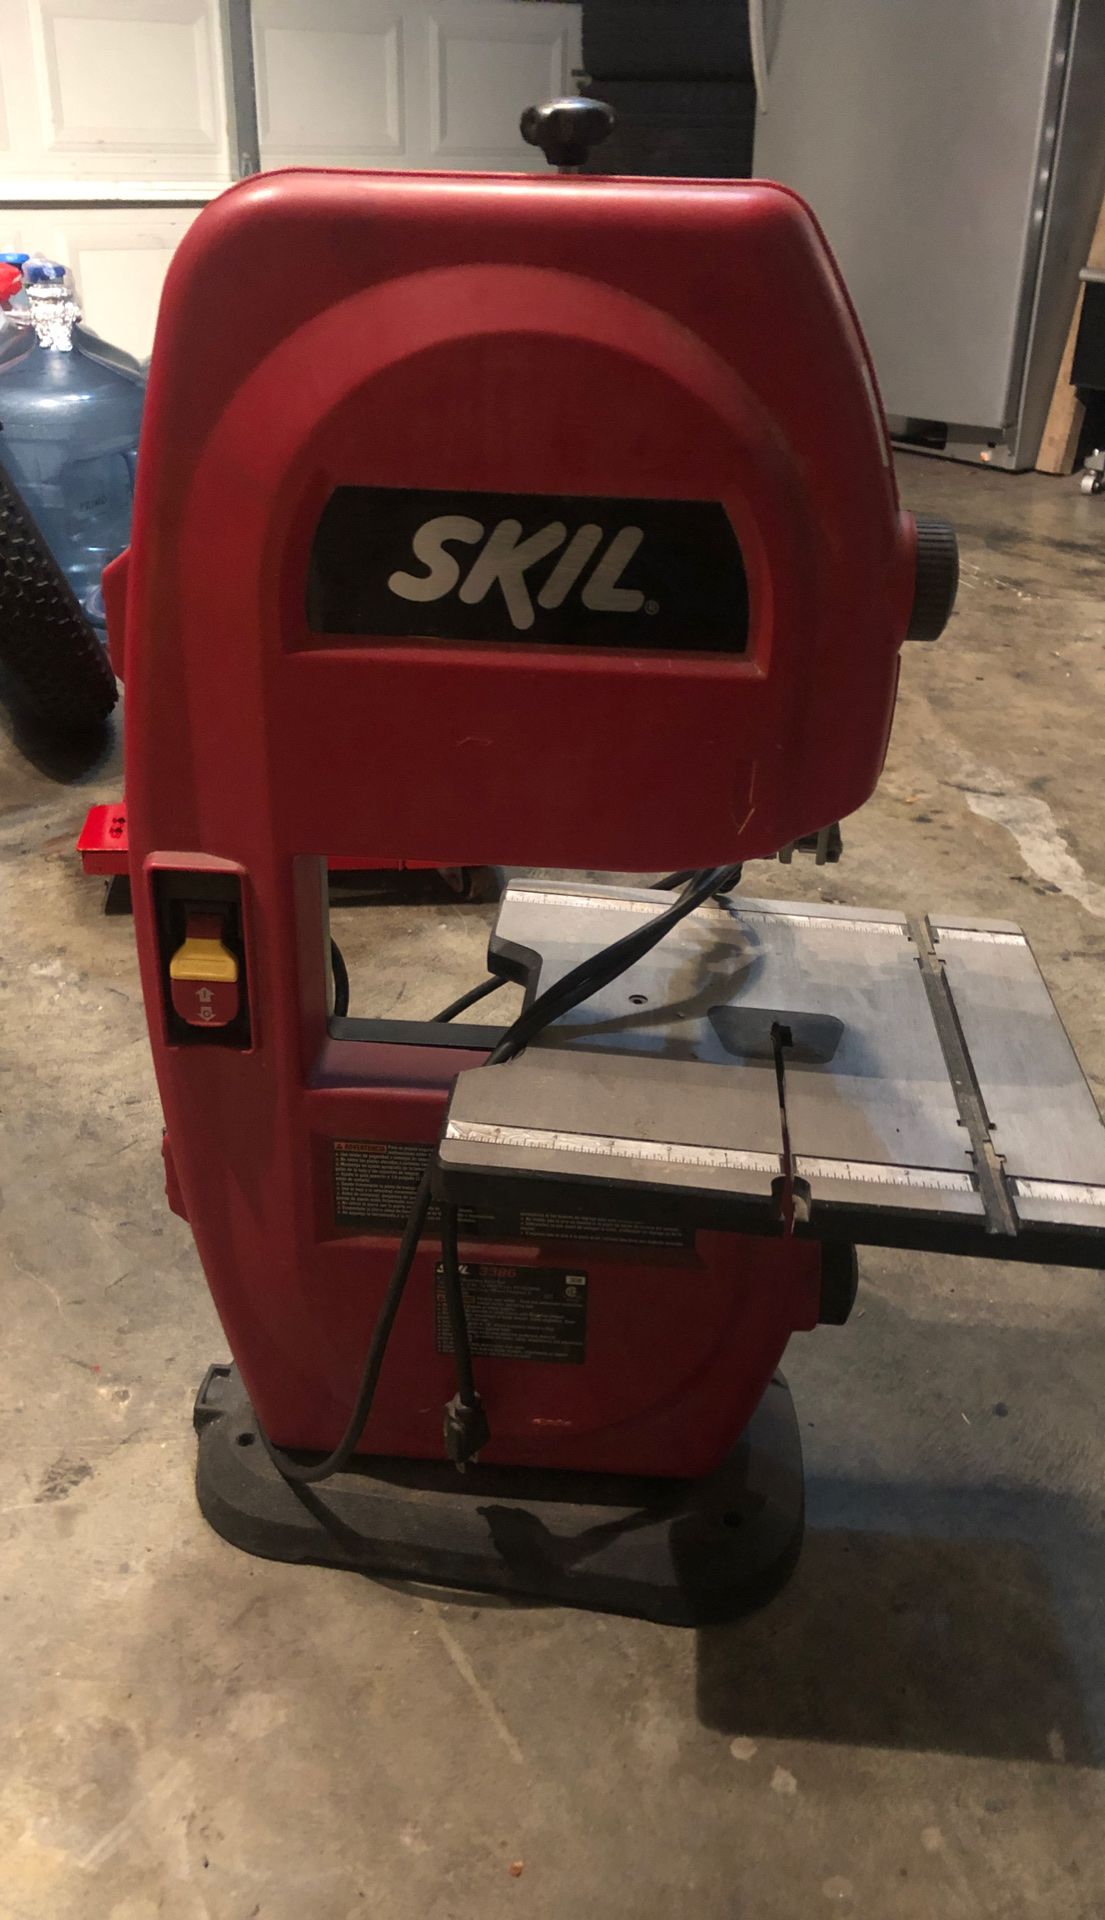 Skil wood saw